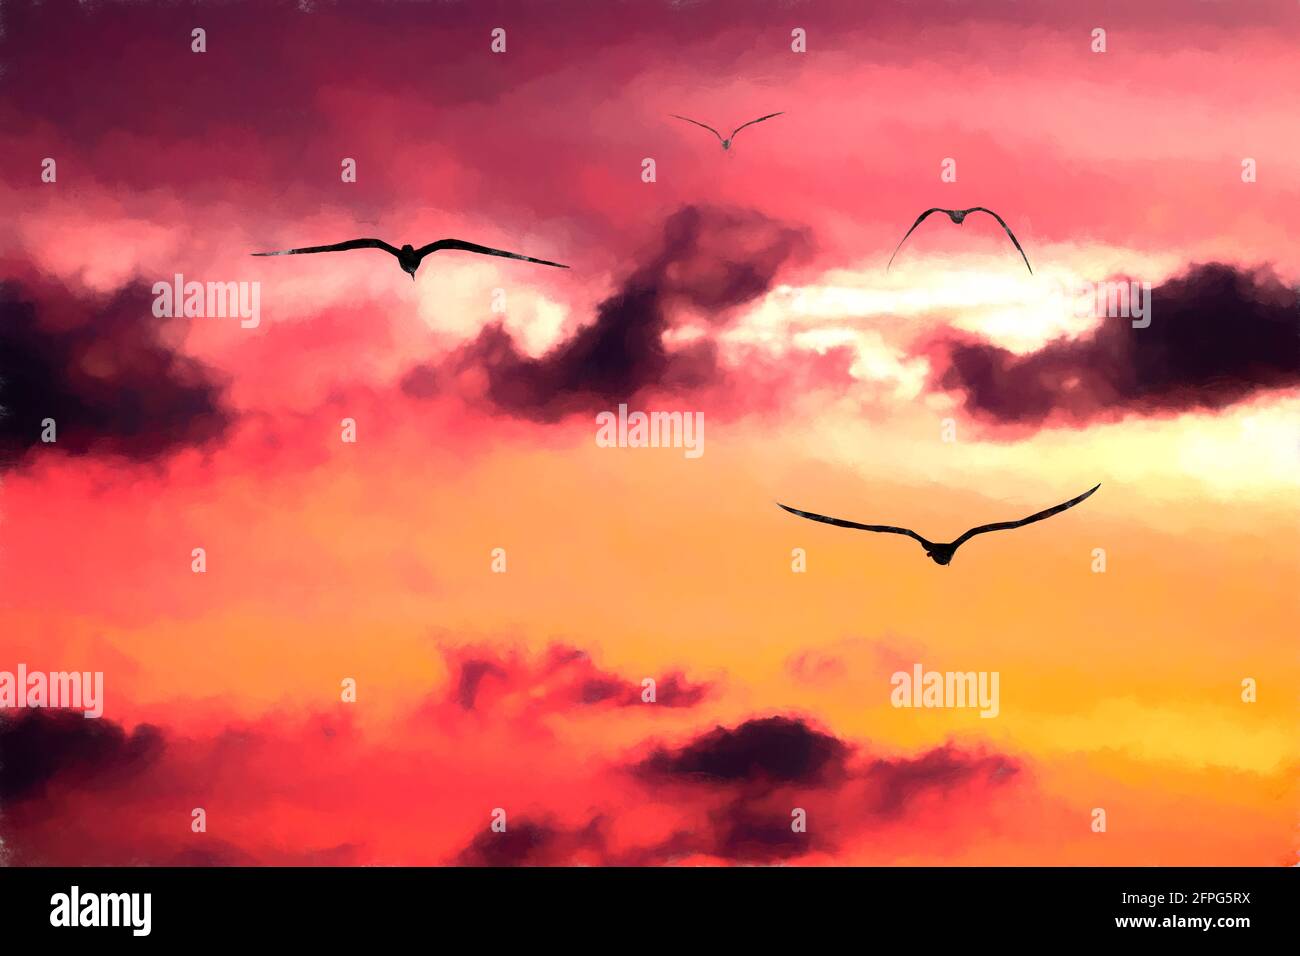 Un gregge di uccelli stanno volando nella nuvola vibrante Pieno Sunset Sky in un formato di pittura illustrativa Foto Stock